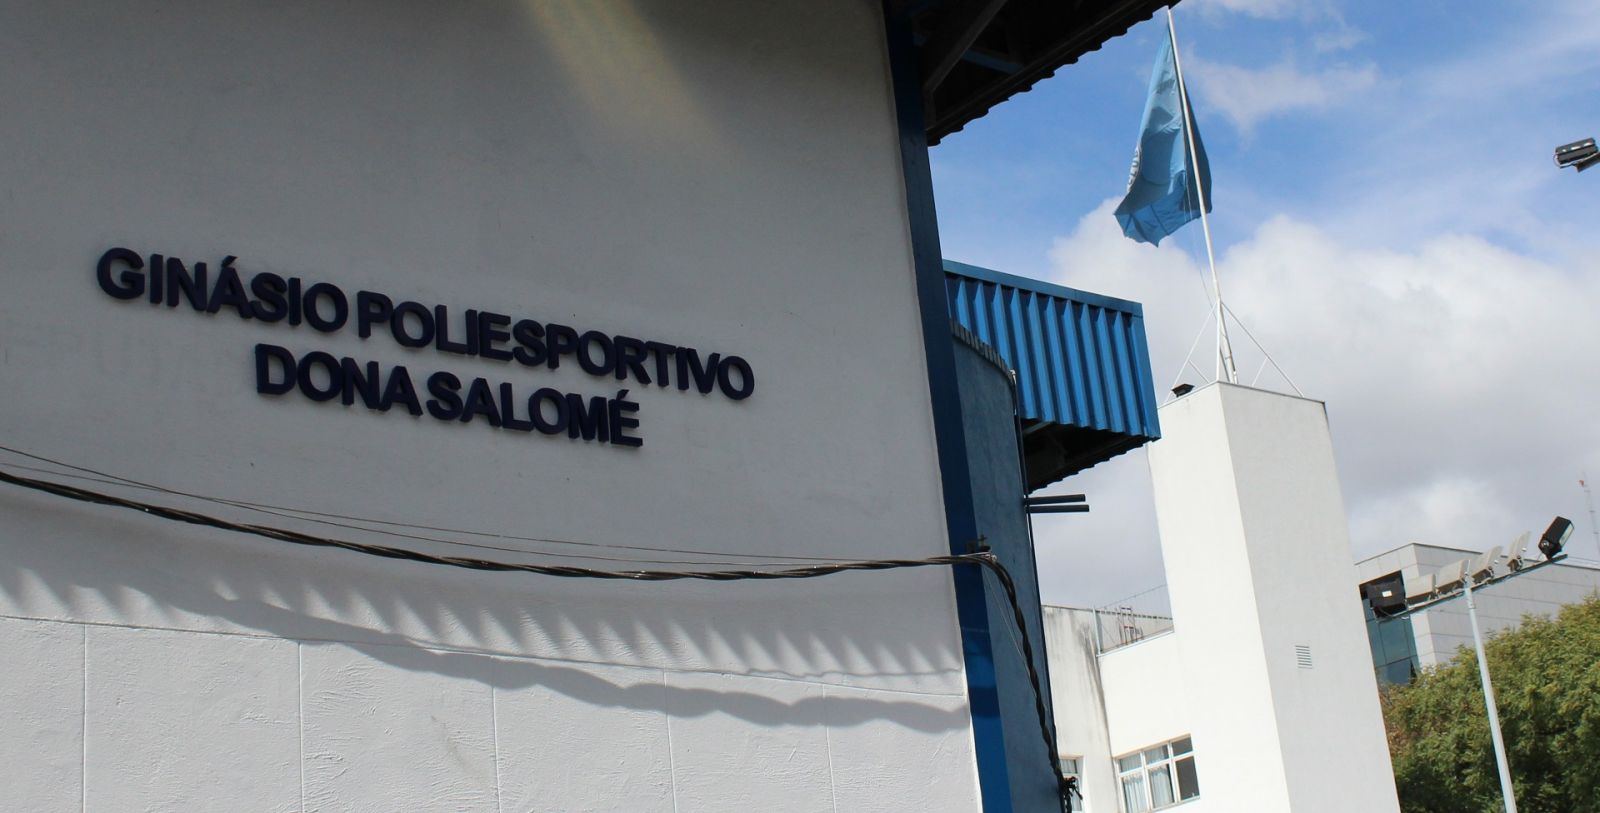 Torcedora ilustre, inesquecível Salomé dará nome ao ginásio poliesportivo do Barro Preto